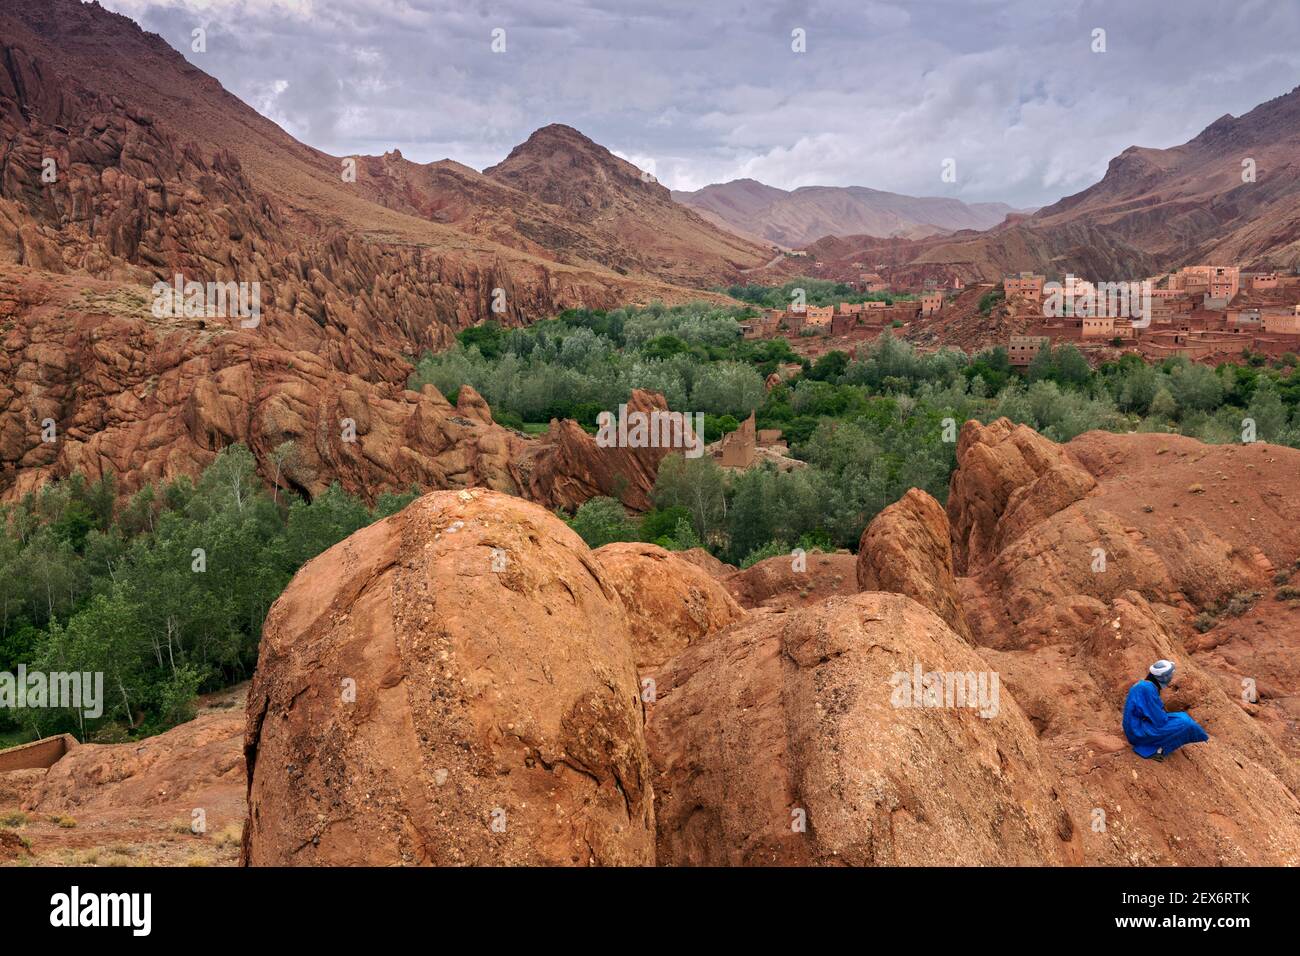 Marokko, Dades Valley in der Nähe der 'Monkey Paws' Felsformationen, mit Berber Männchen in blau gekleidet. Eine karge Landschaft mit üppiger Vegetation entlang eines Flusses. Stockfoto